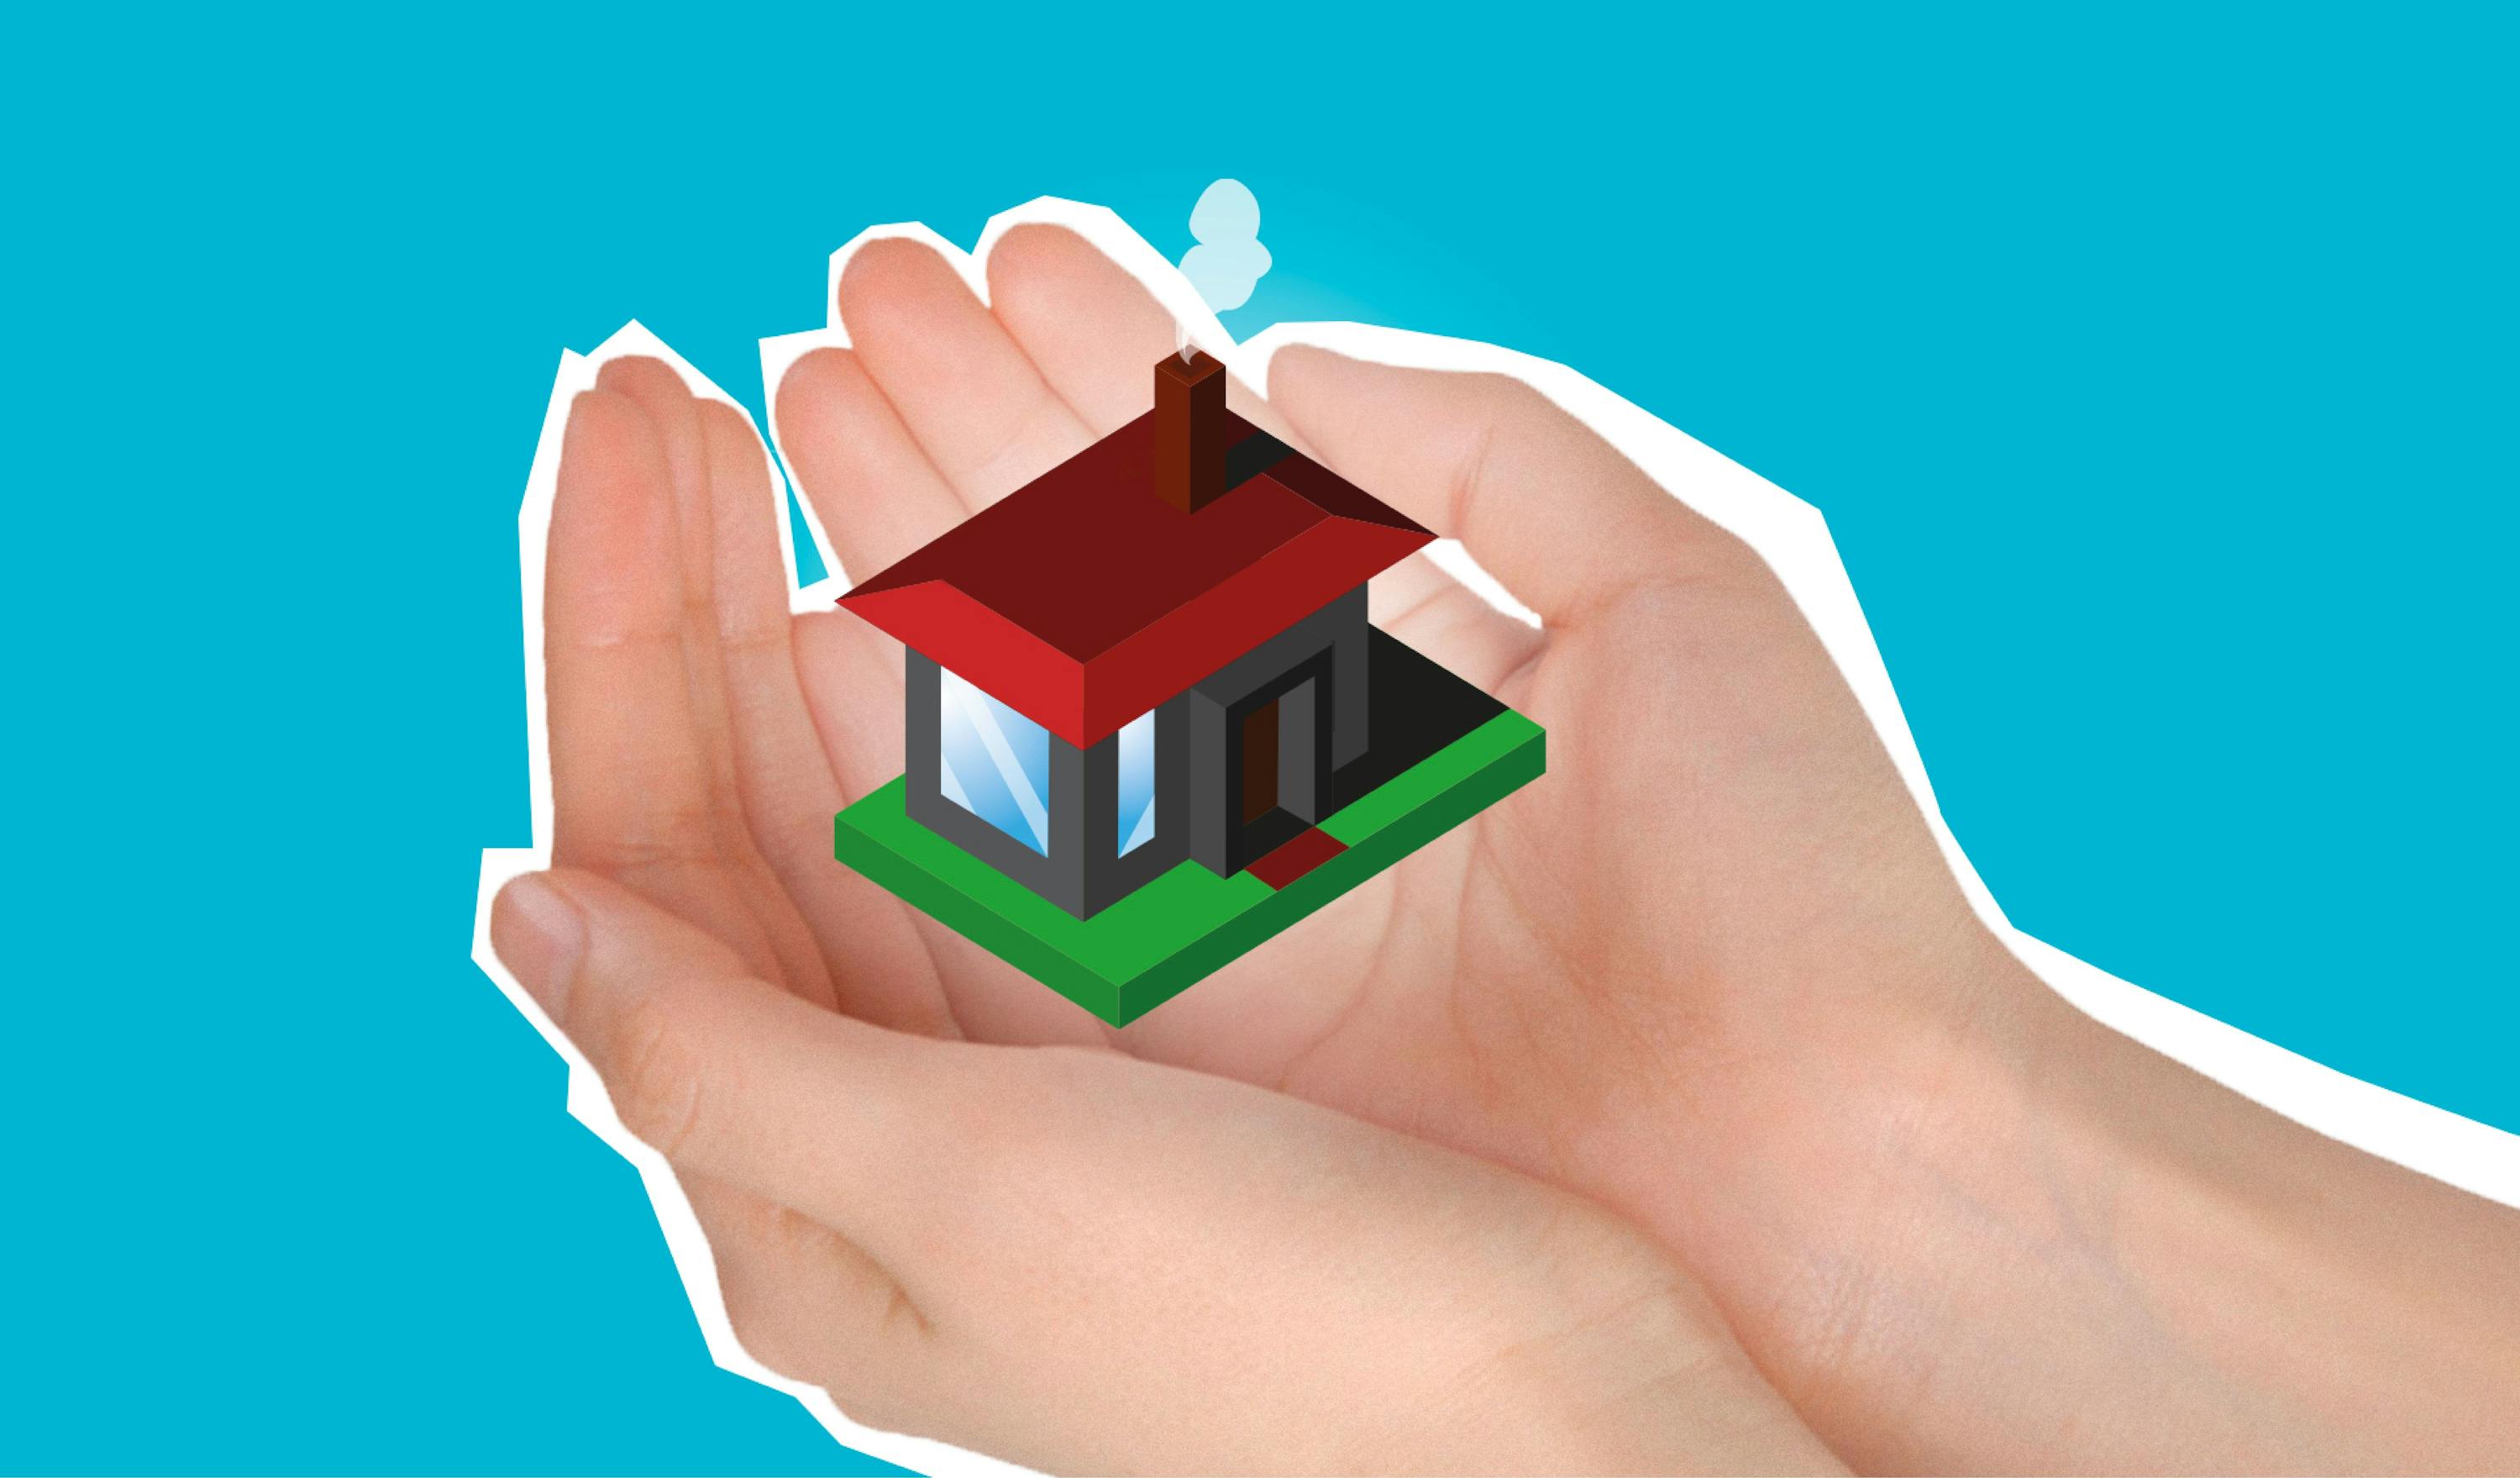 Zwei Hände halten ein rotes Miniatur Haus